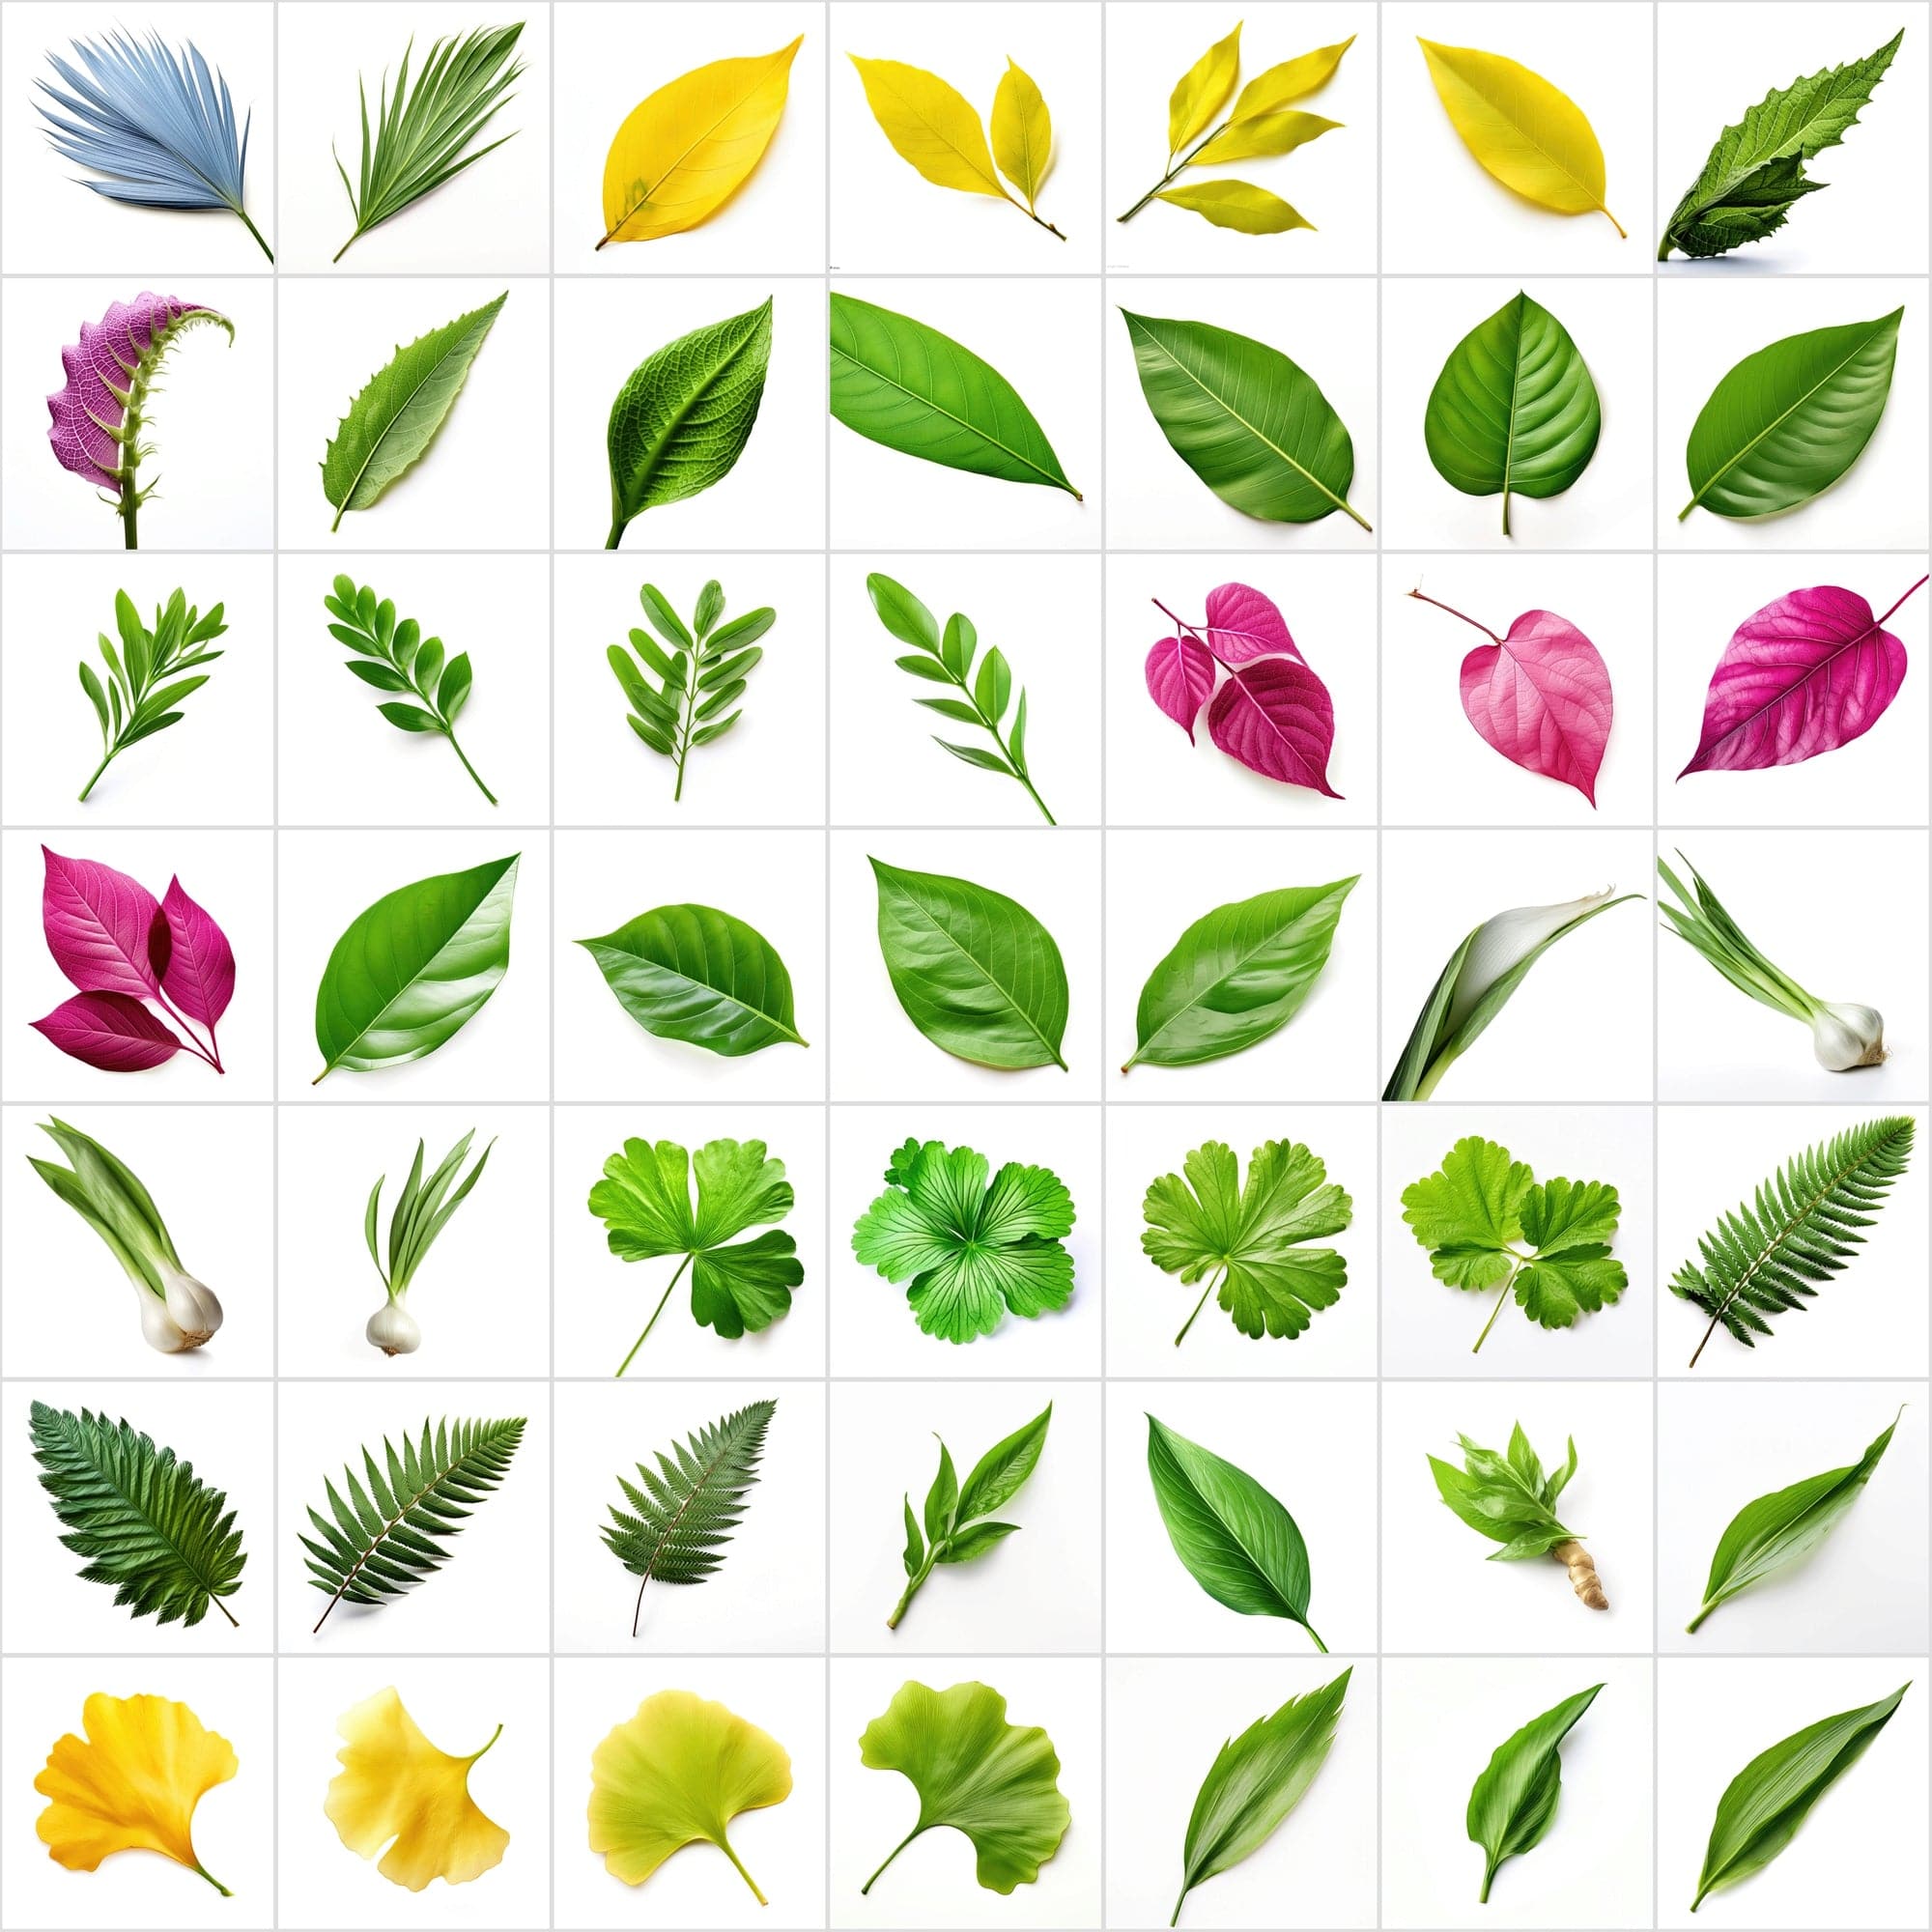 790 Unique Global Leaf PNG Images - High-Resolution, Transparent & White Backgrounds Digital Download Sumobundle